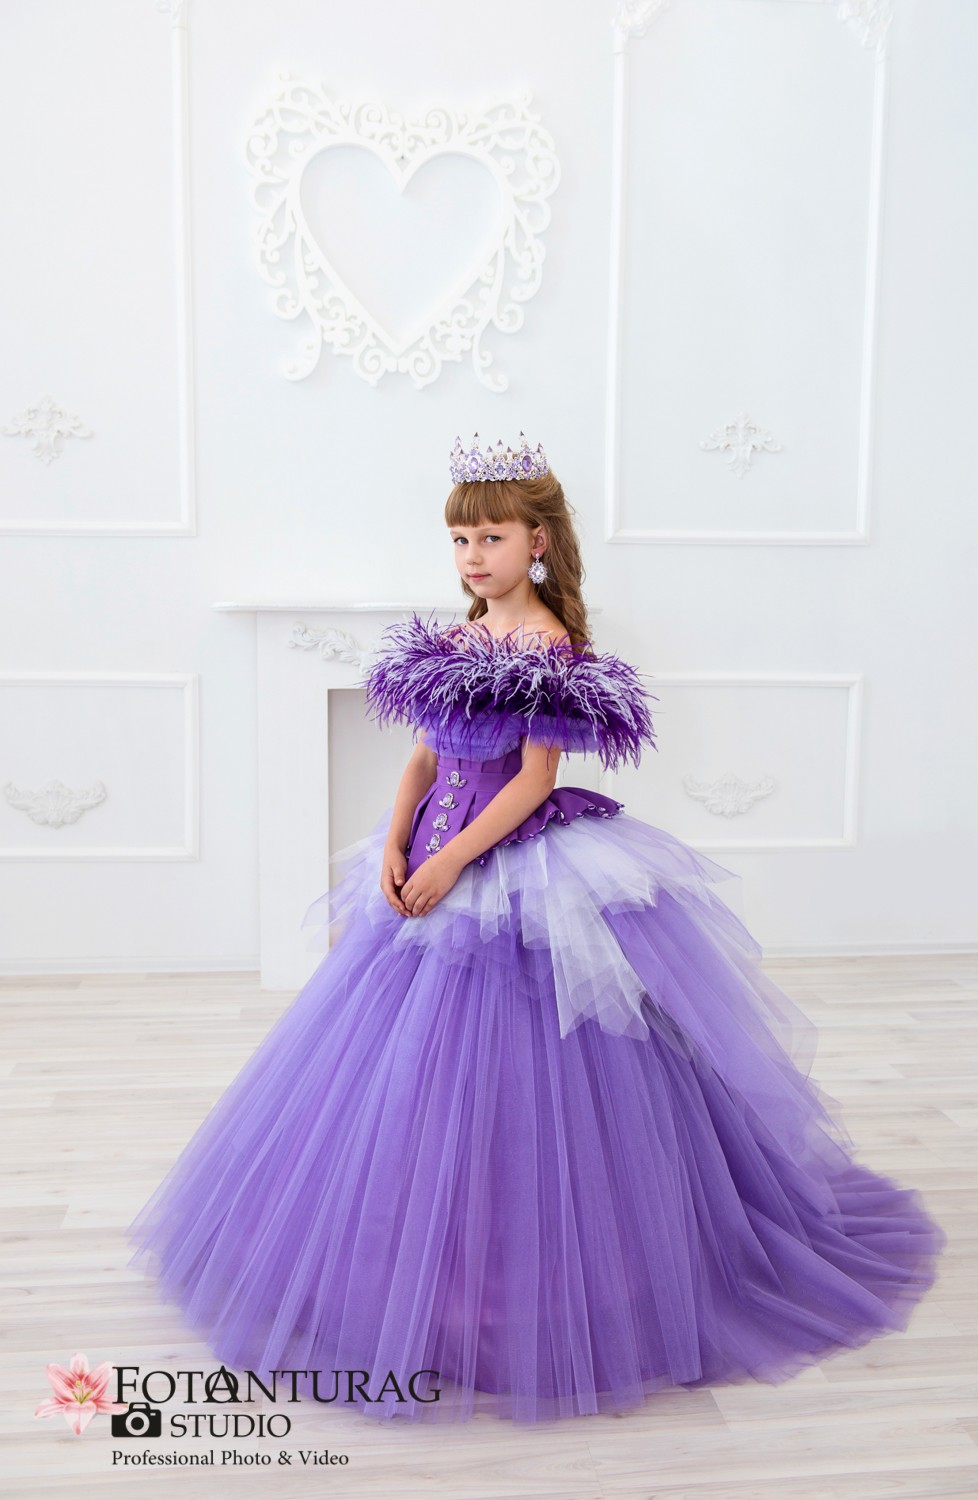 портфолио  - Фото для маленькой принцессы